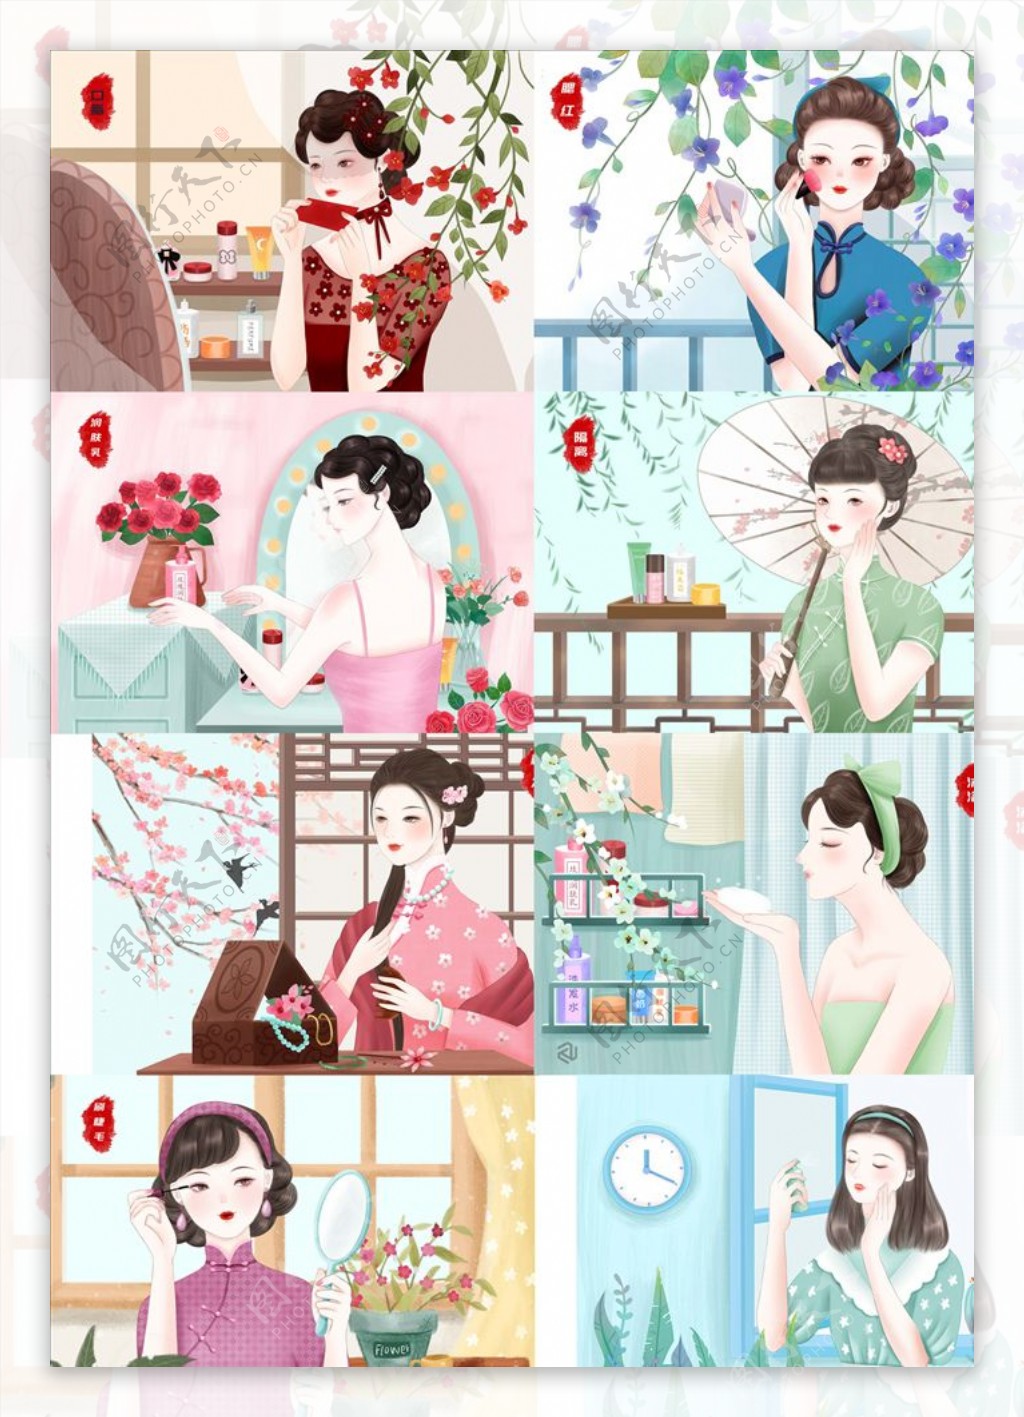 中国风复古旗袍女性养生护肤设计图片